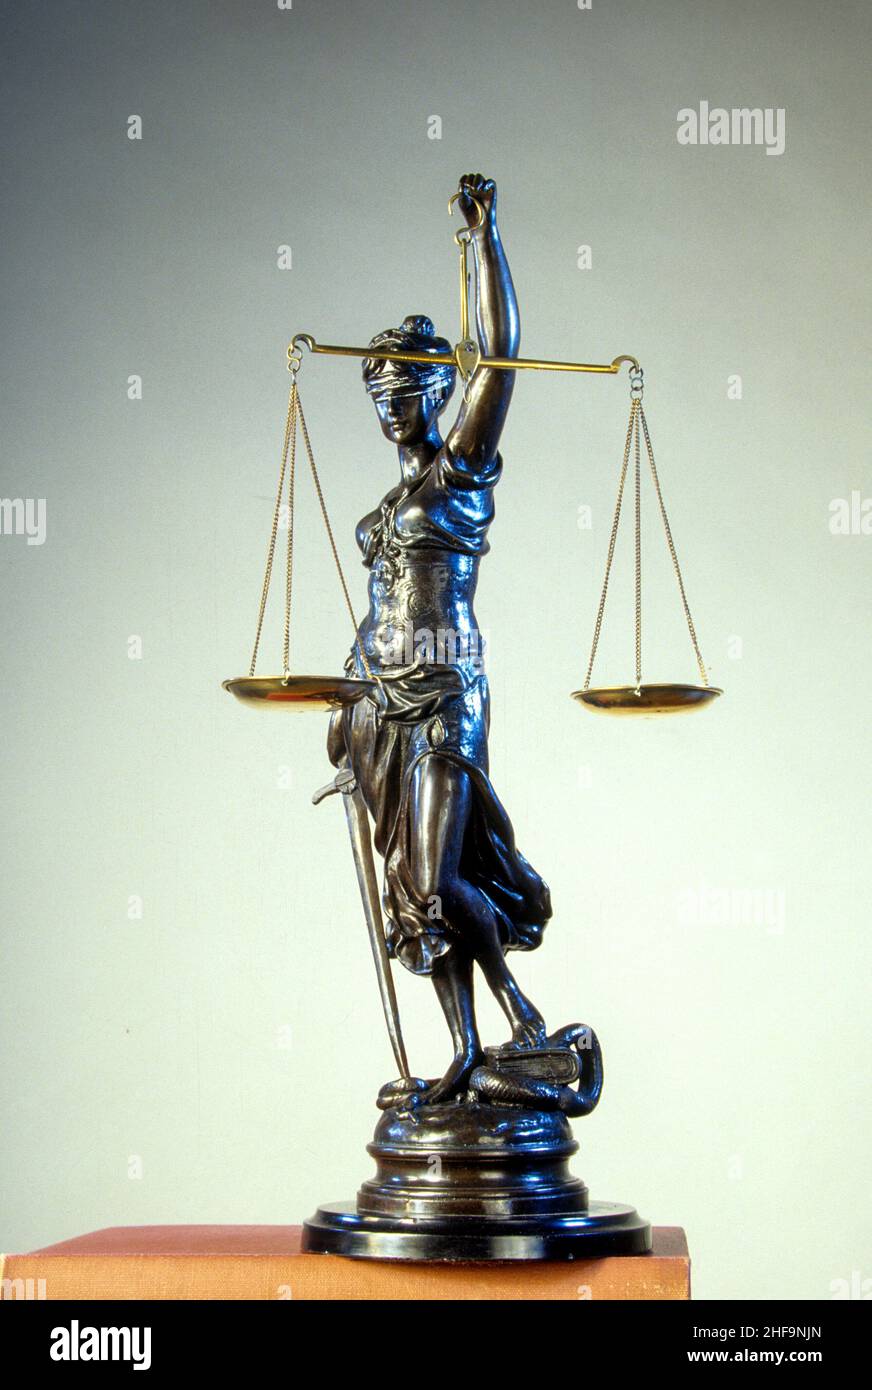 Una statua simbolica in bronzo di una giustizia femminile cieca che porta una spada e tiene le bilance della giustizia. Foto Stock